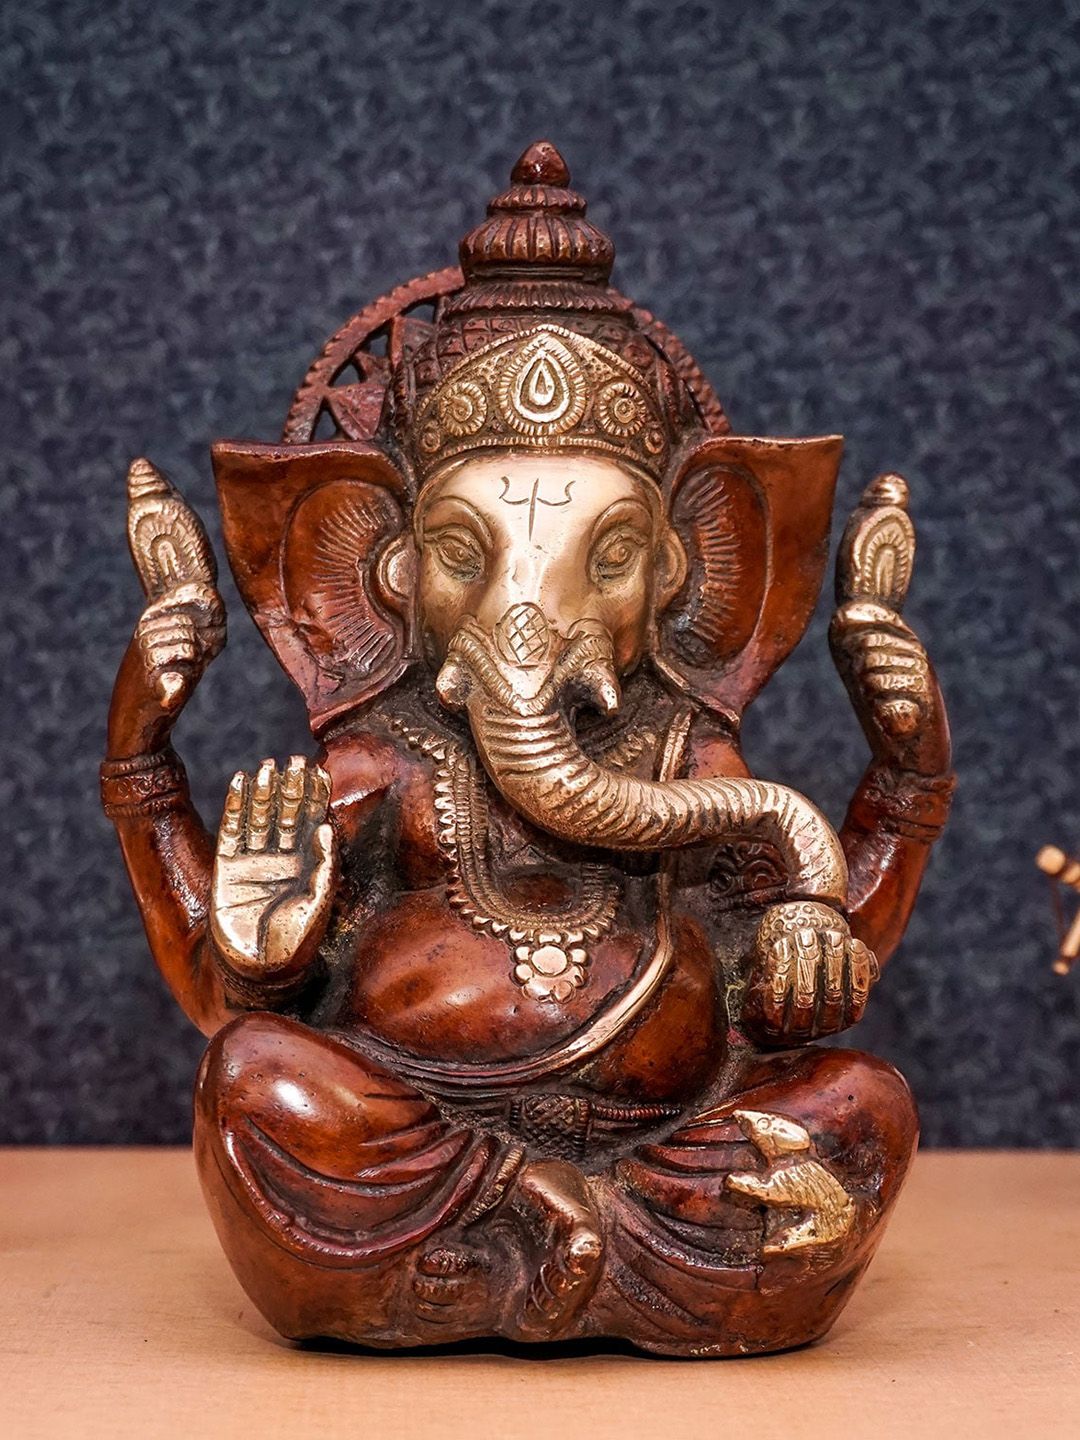 StatueStudio Copper-Colored Ganesha Idol Figurine Showpiece Price in India